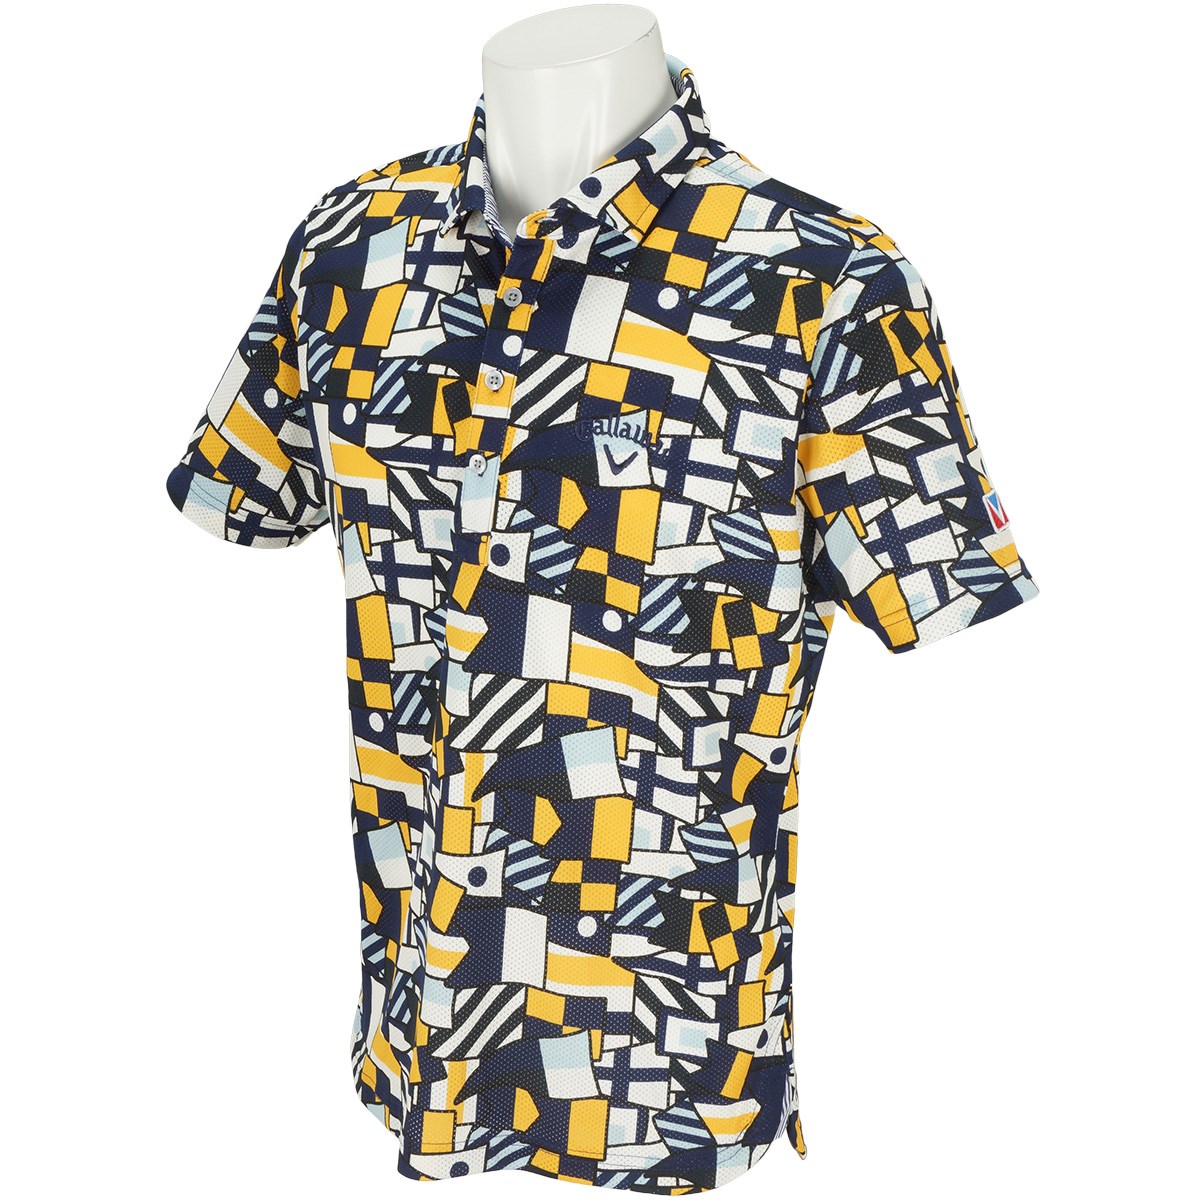 キャロウェイゴルフ(Callaway Golf) フラッグプリントワイドカラー半袖ポロシャツ 